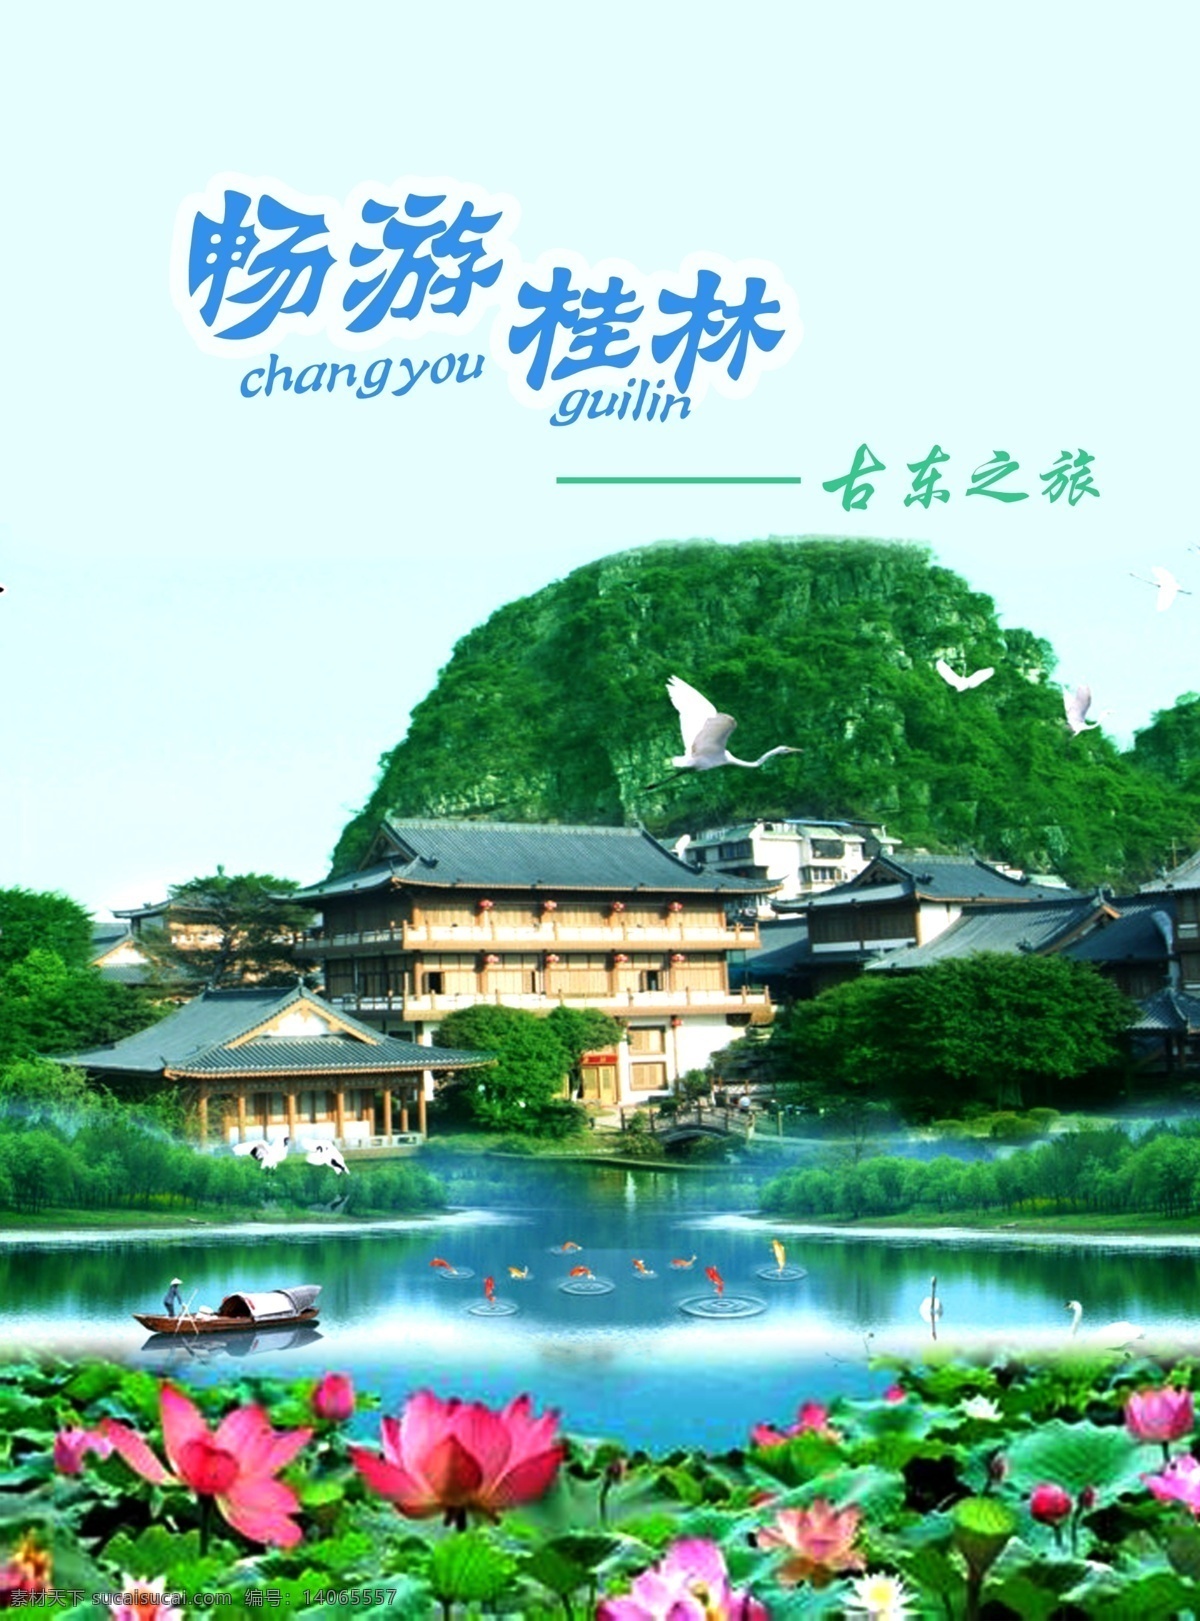 桂林 山水 美景 海报 景色宜人 原创设计 原创海报